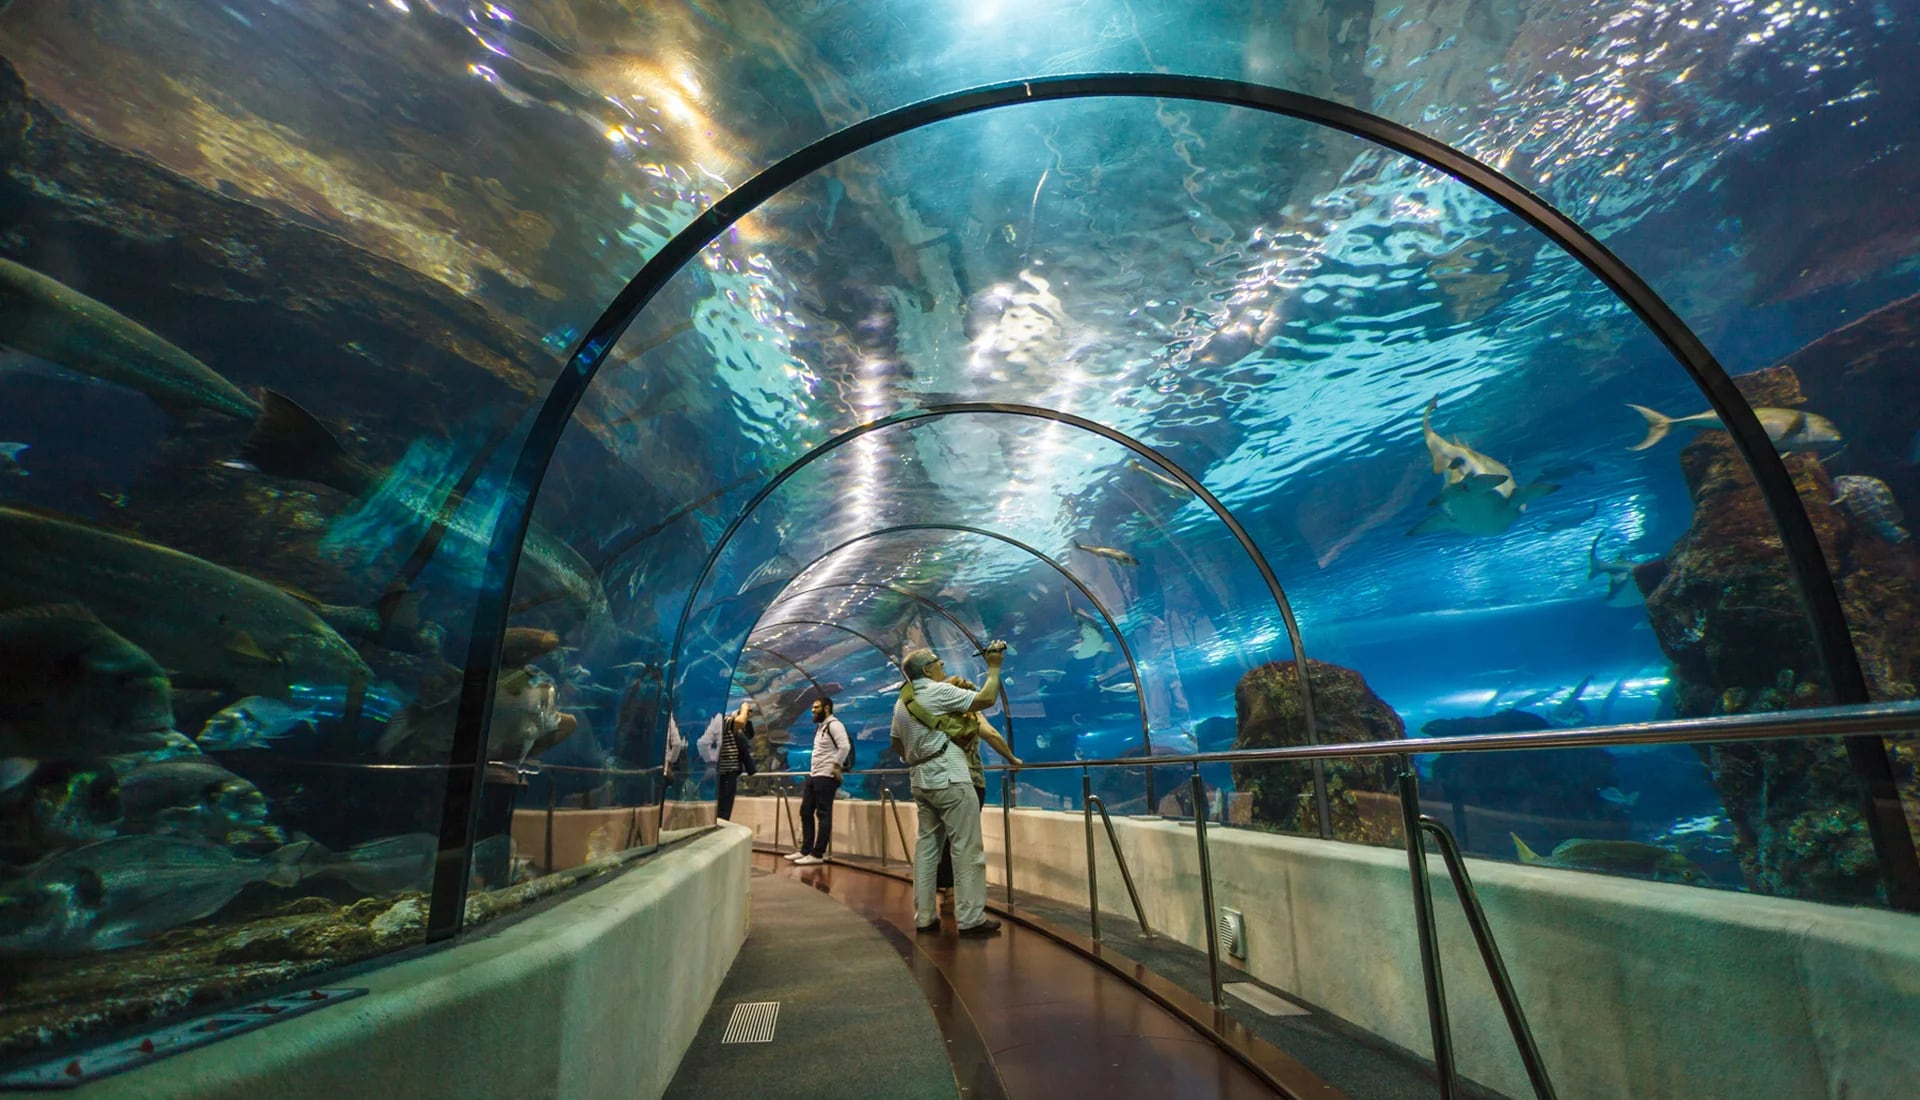 Su túnel transparente de 80 metros permite disfrutar de la experiencia de sentirse como en el interior del océano mediterráneo